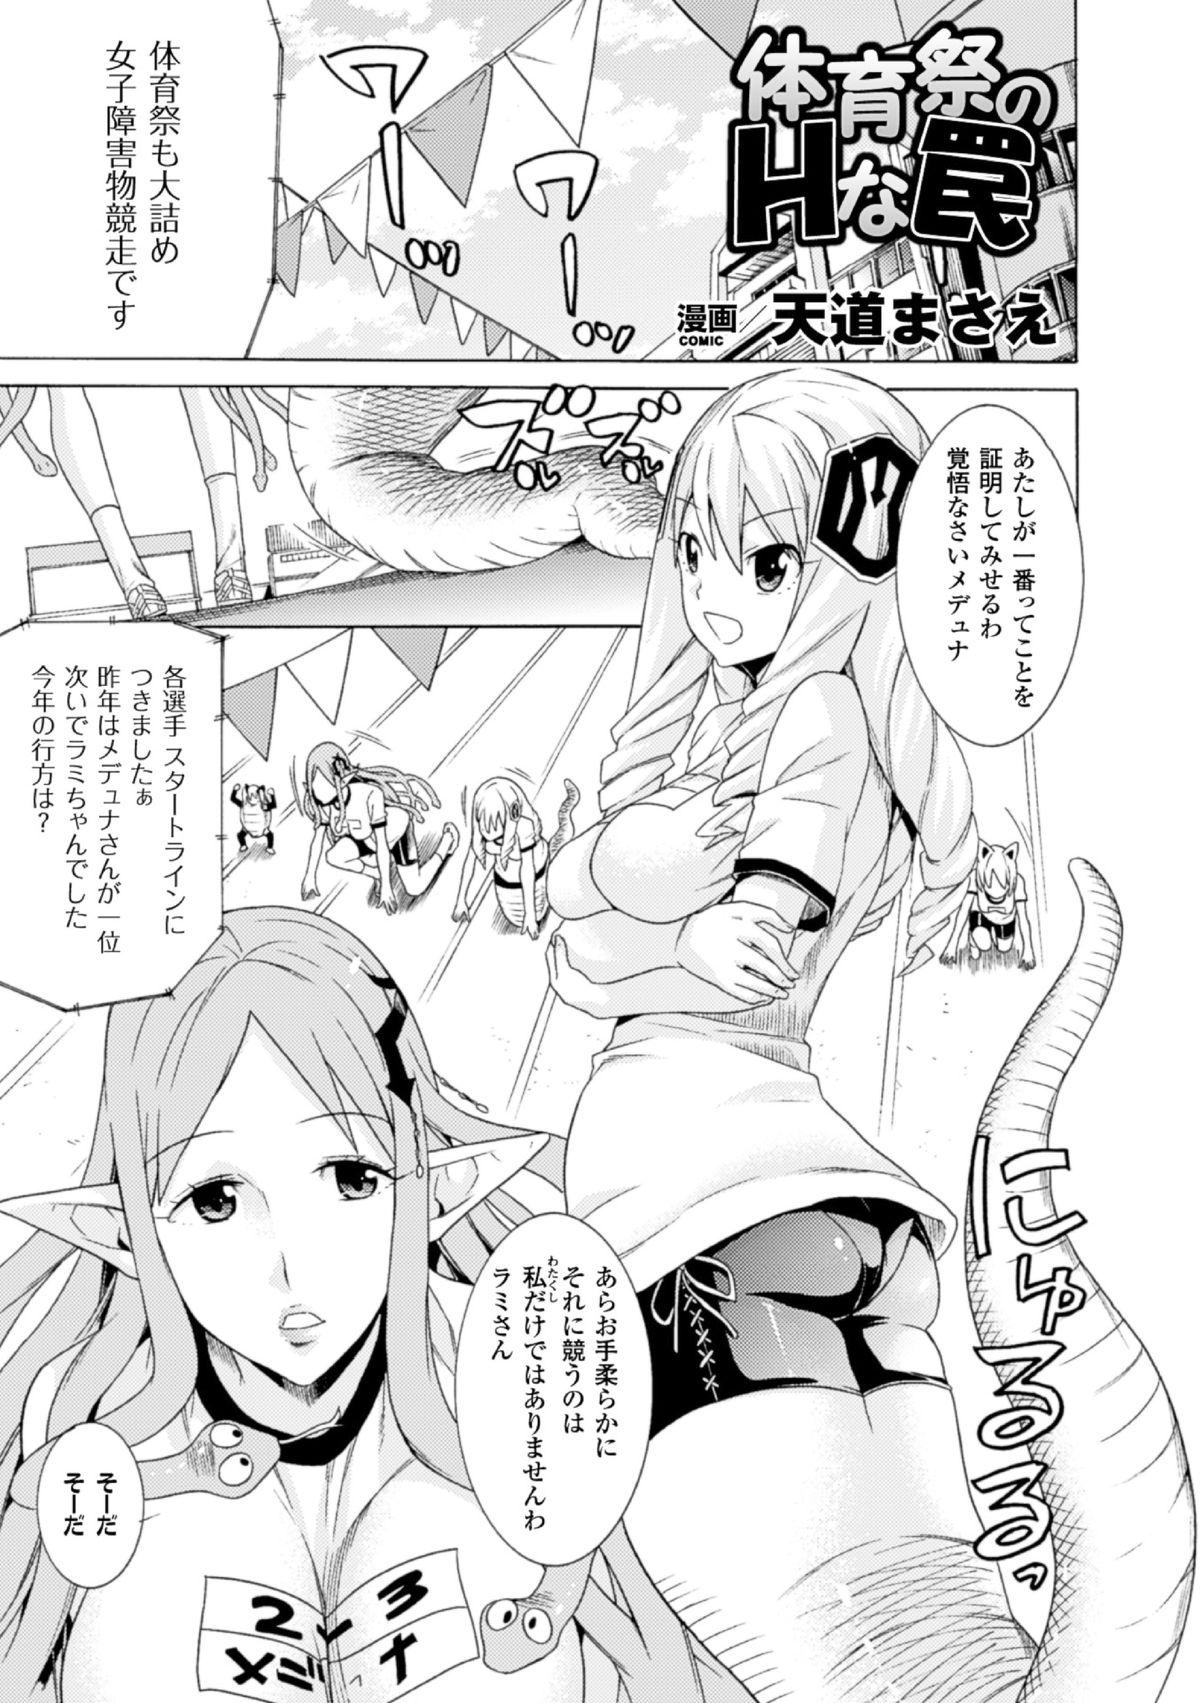 Nurumassage 2D Comic Magazine - Monster Musume ga Tsudou Ishuzoku Gakuen e Youkoso! Vol. 2 Master - Page 5